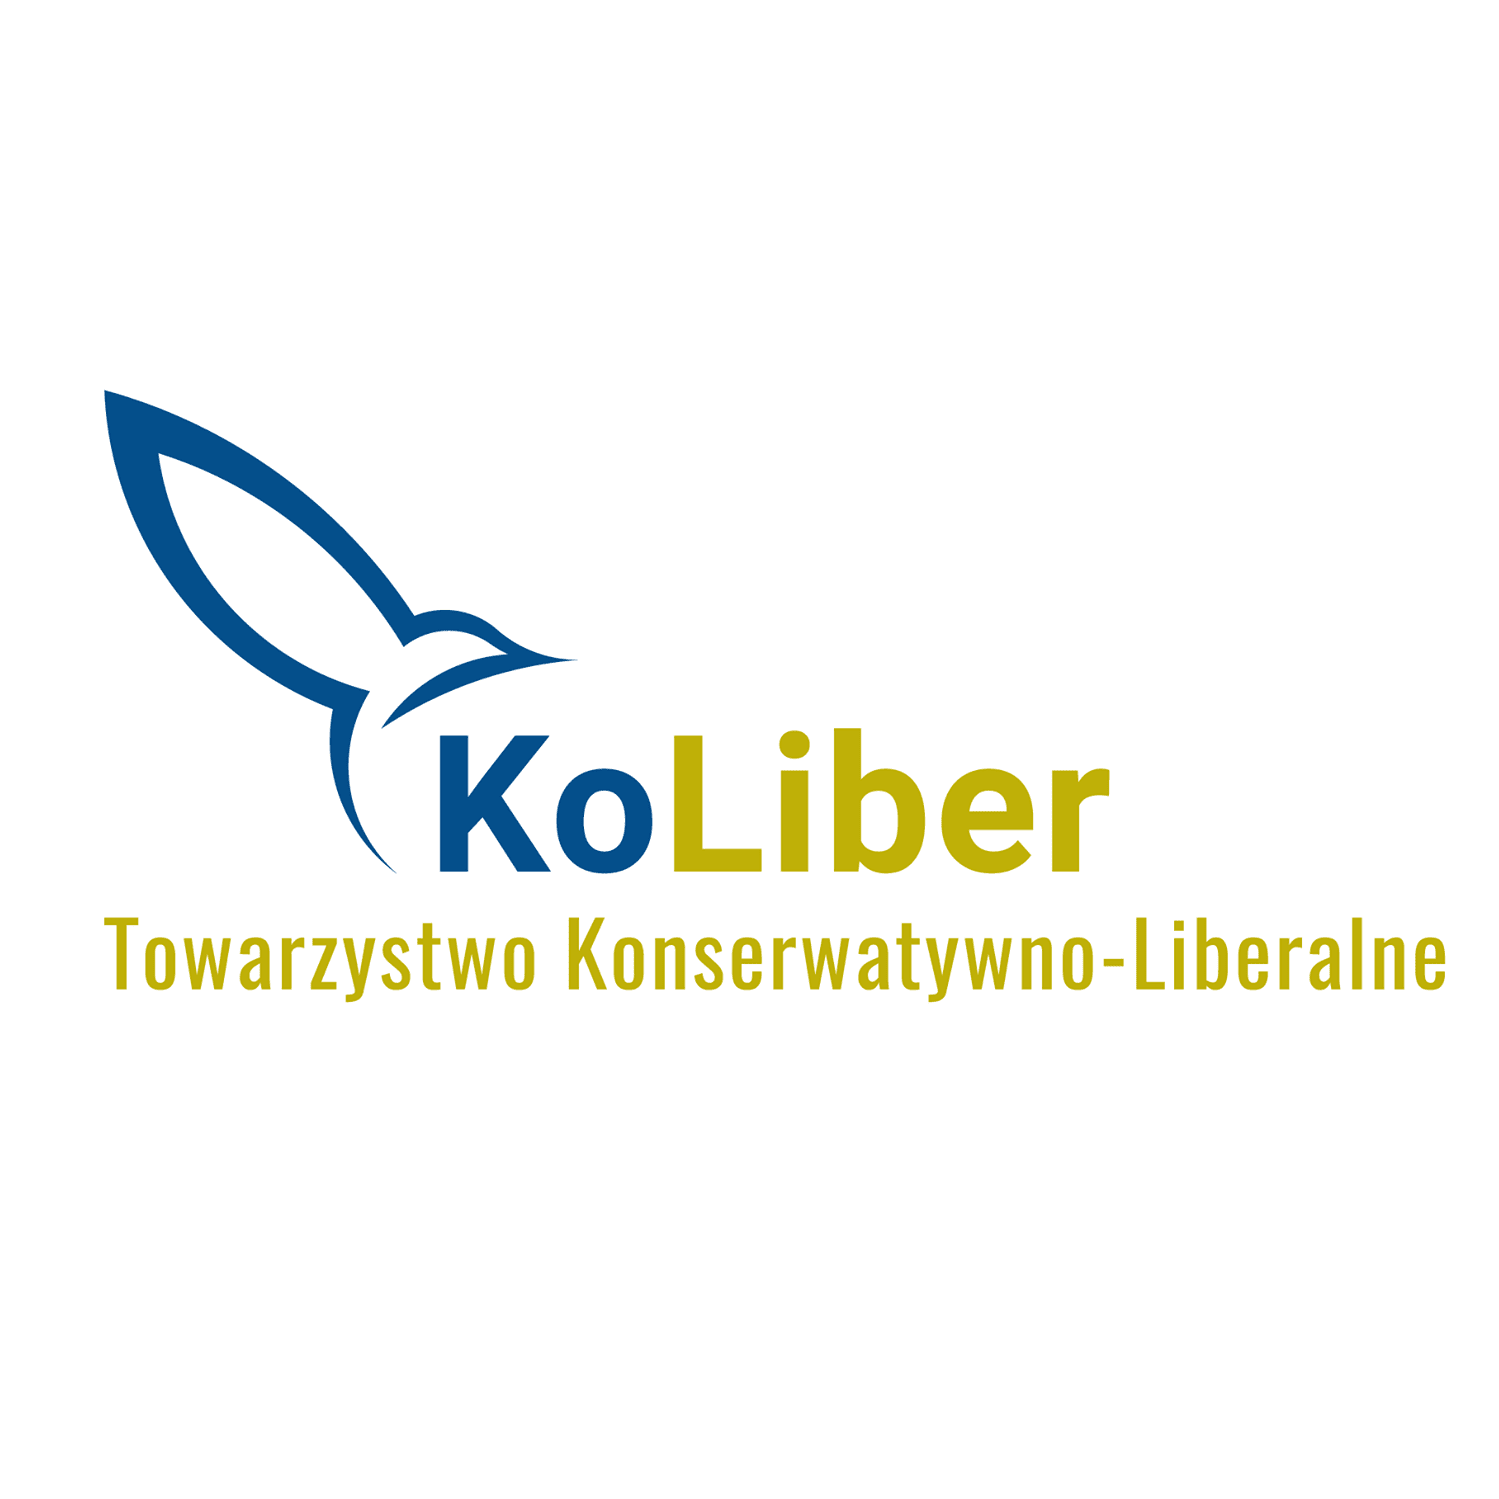 KoLiber - Towarzystwo Konserwatywno-Liberalne